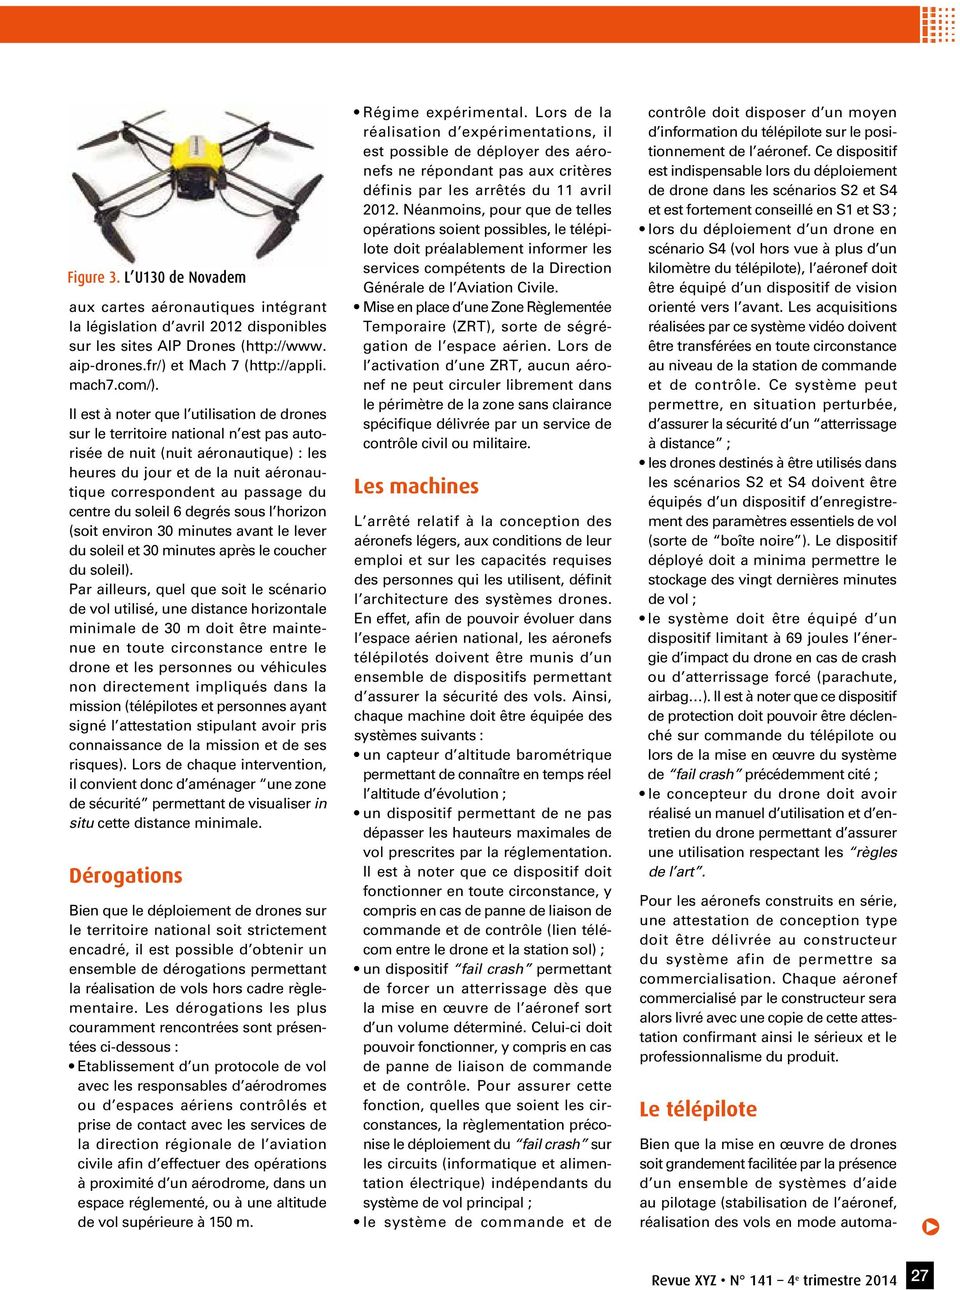 automaaux cartes aéronautiues intégrant la législation d avril 2012 disponibles sur les sites AIP Drones (http://www. aip-drones.fr/) et Mach 7 (http://appli. mach7.com/).